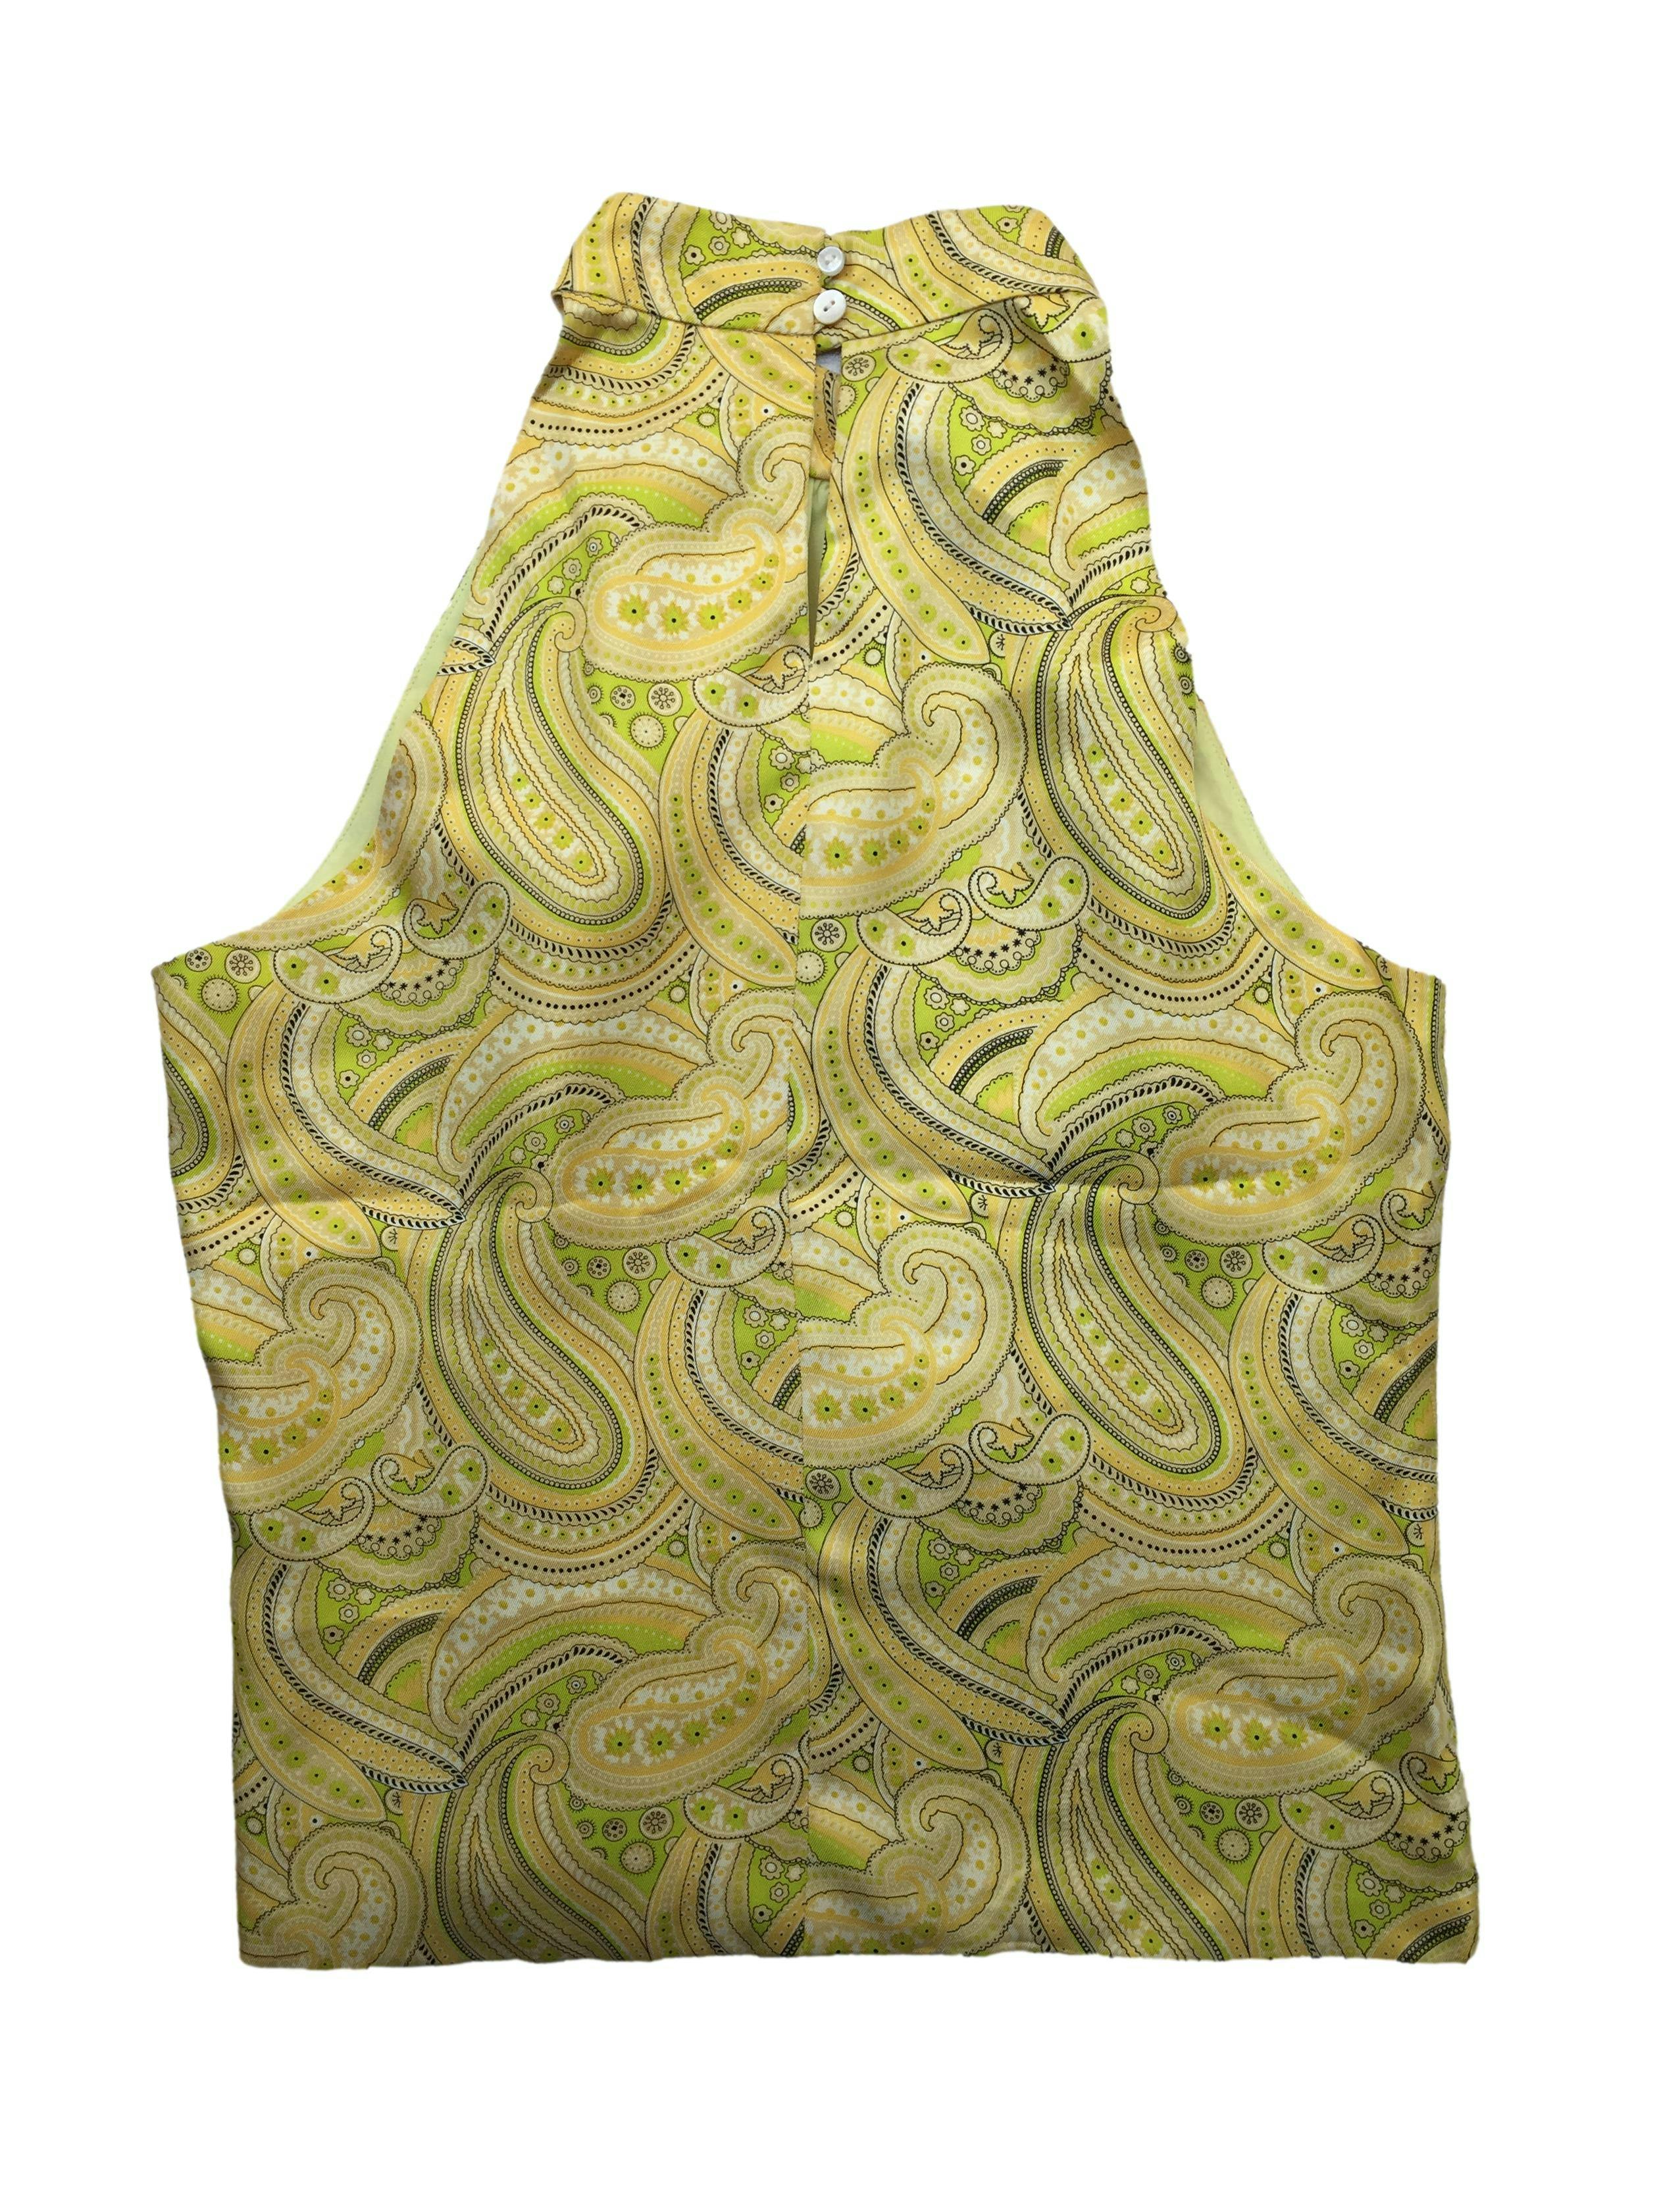 Blusa J. Melaughlin amarilla, estampado paisley. Busto: 100cm, Largo: 53cm. Nueva